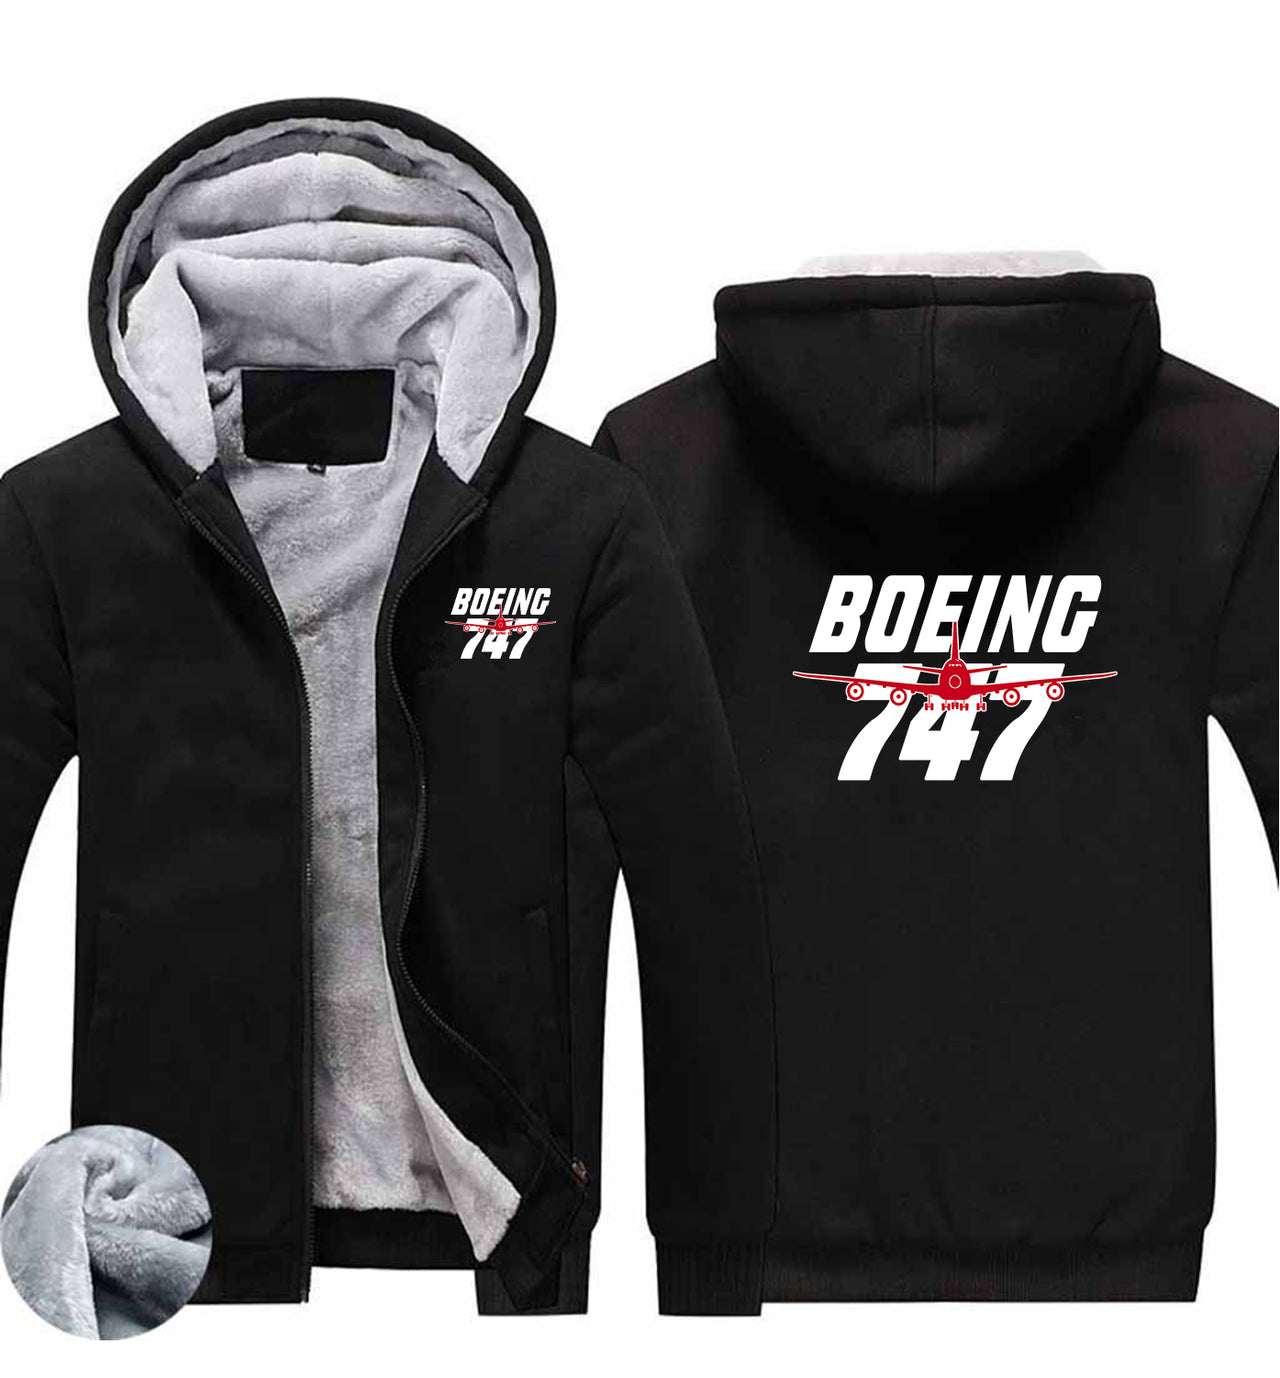 Amazing Boeing 747 Designed Zipped Sweatshirts